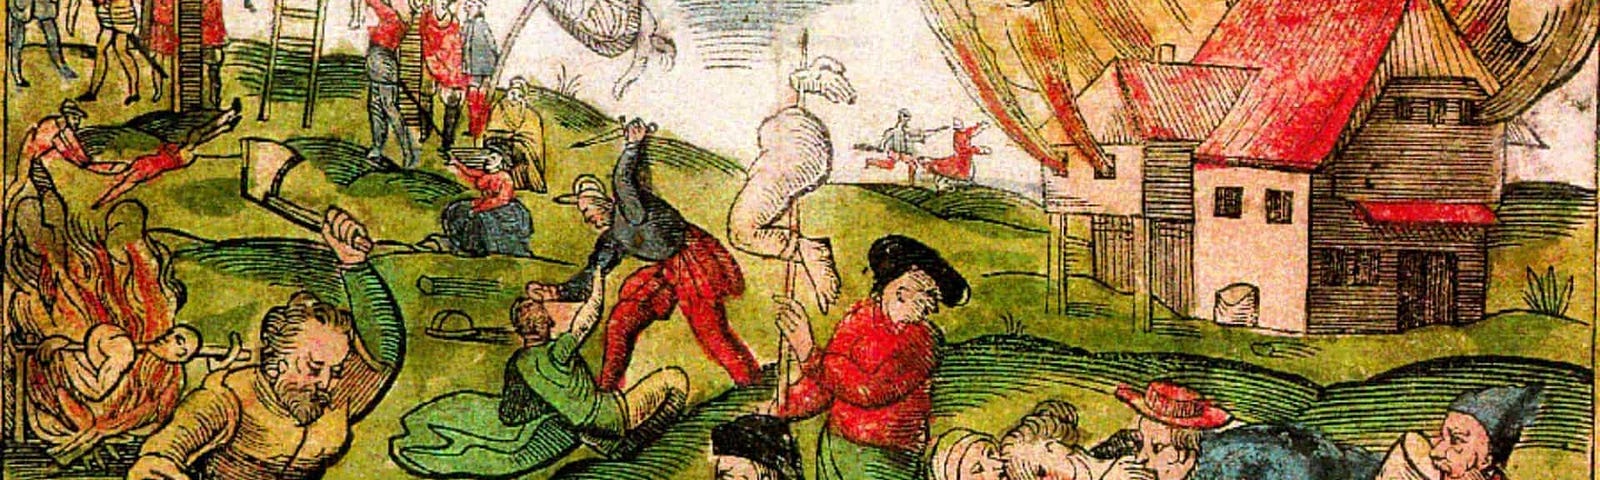 Песнь голода. Каннибализм в средневековье. 1315-1317 Великий голод в Европе.